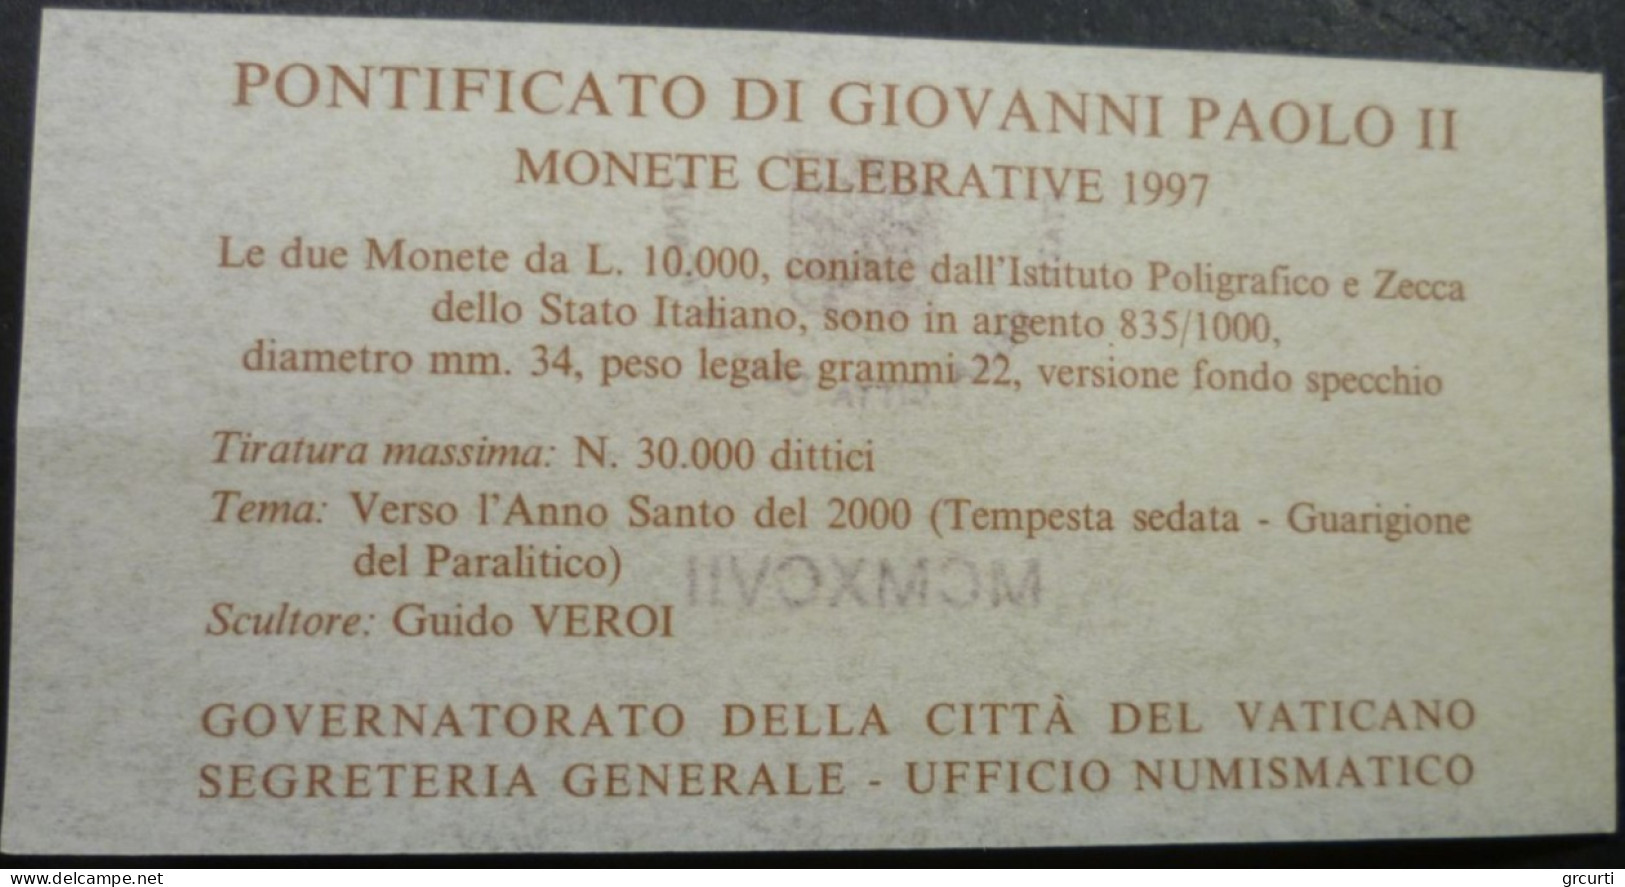 Vaticano - 2 x 10.000 Lire 1997 - Verso l'Anno Santo del 2000 - Gig# 333 - KM# 318-319